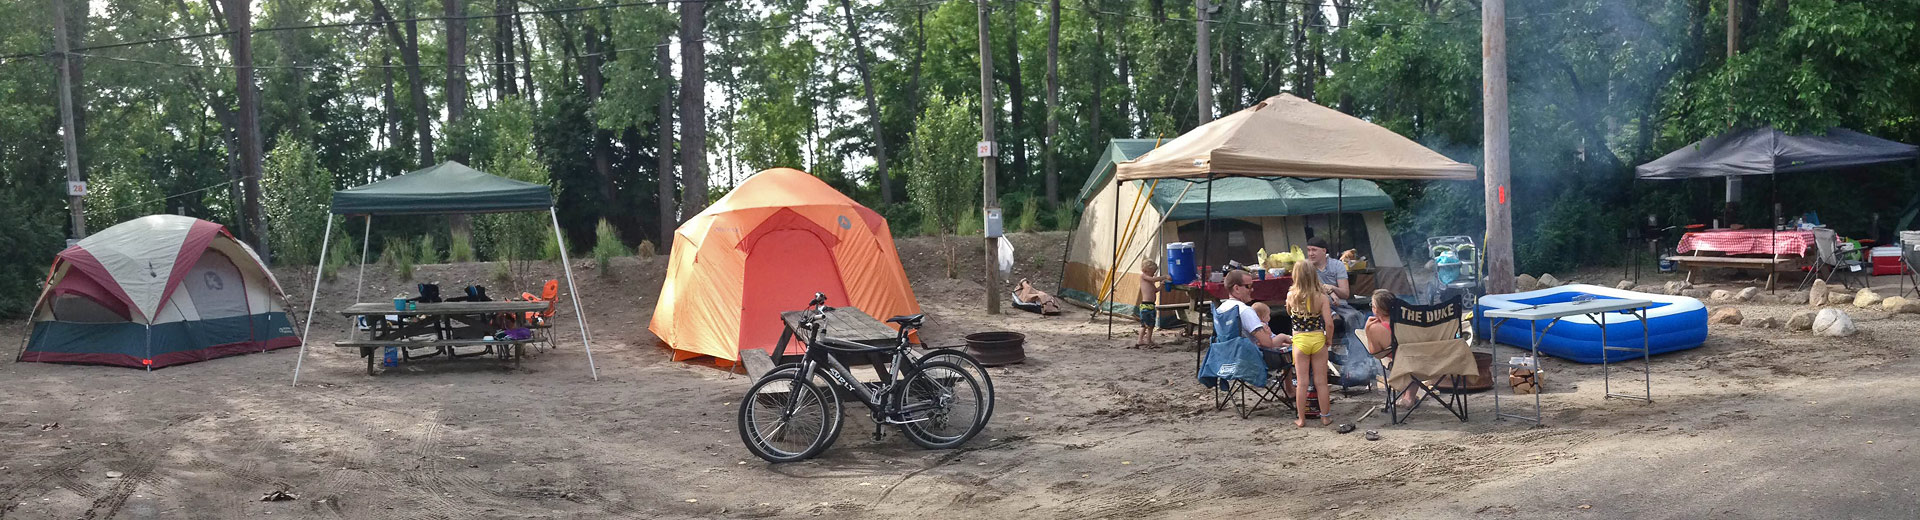 Tent camping at Sara’s Campground